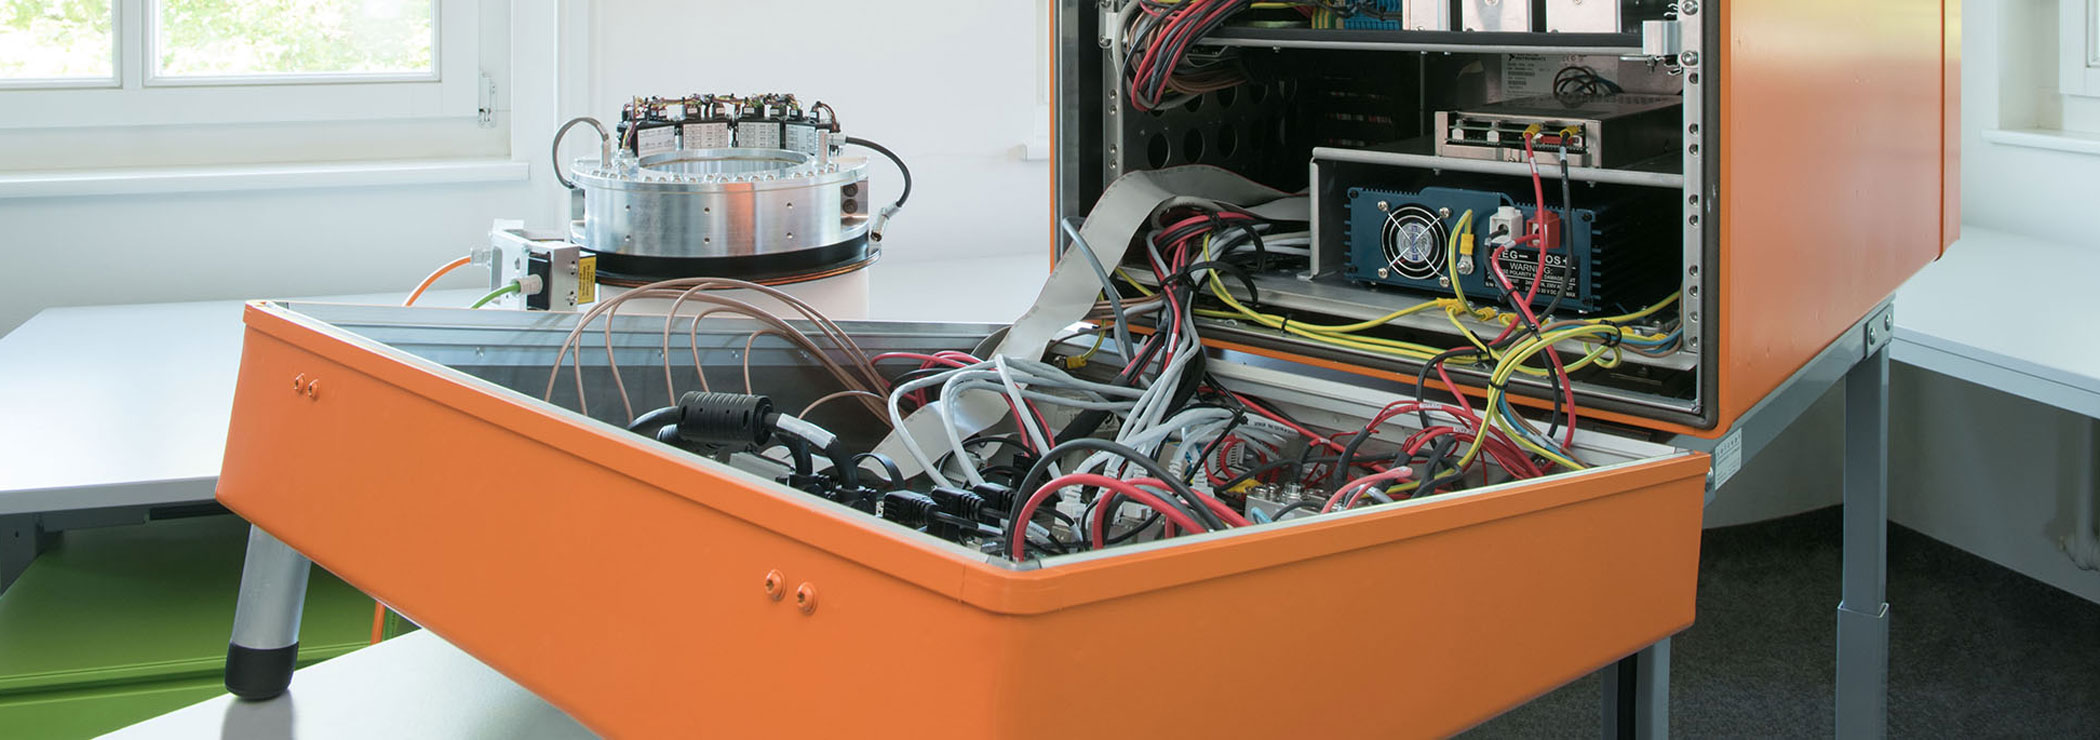 Flugtestinstrumentierung: orange Elektronikbox mit Mess- und Aufzeichnungsgeräten für Flugtests